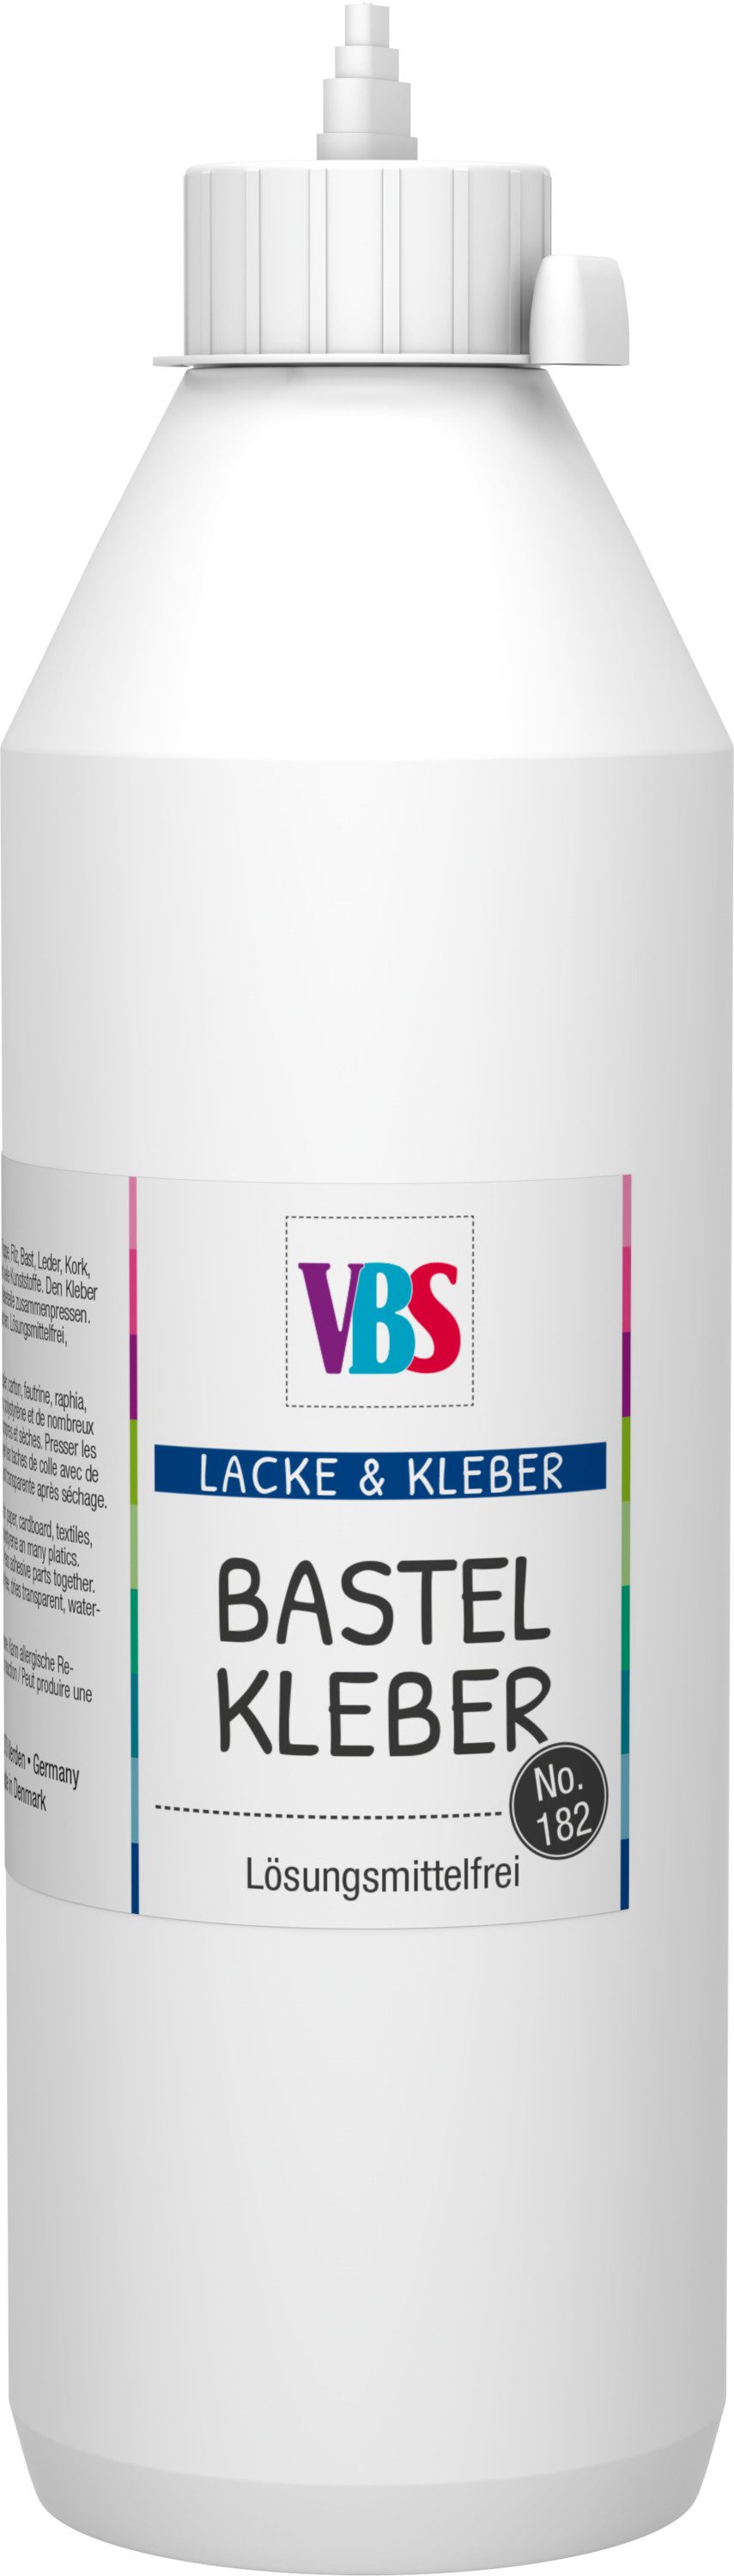 VBS Bastelkleber Bastelkleber No. 182, Wasserbasis, lösungsmittelfrei und transparent